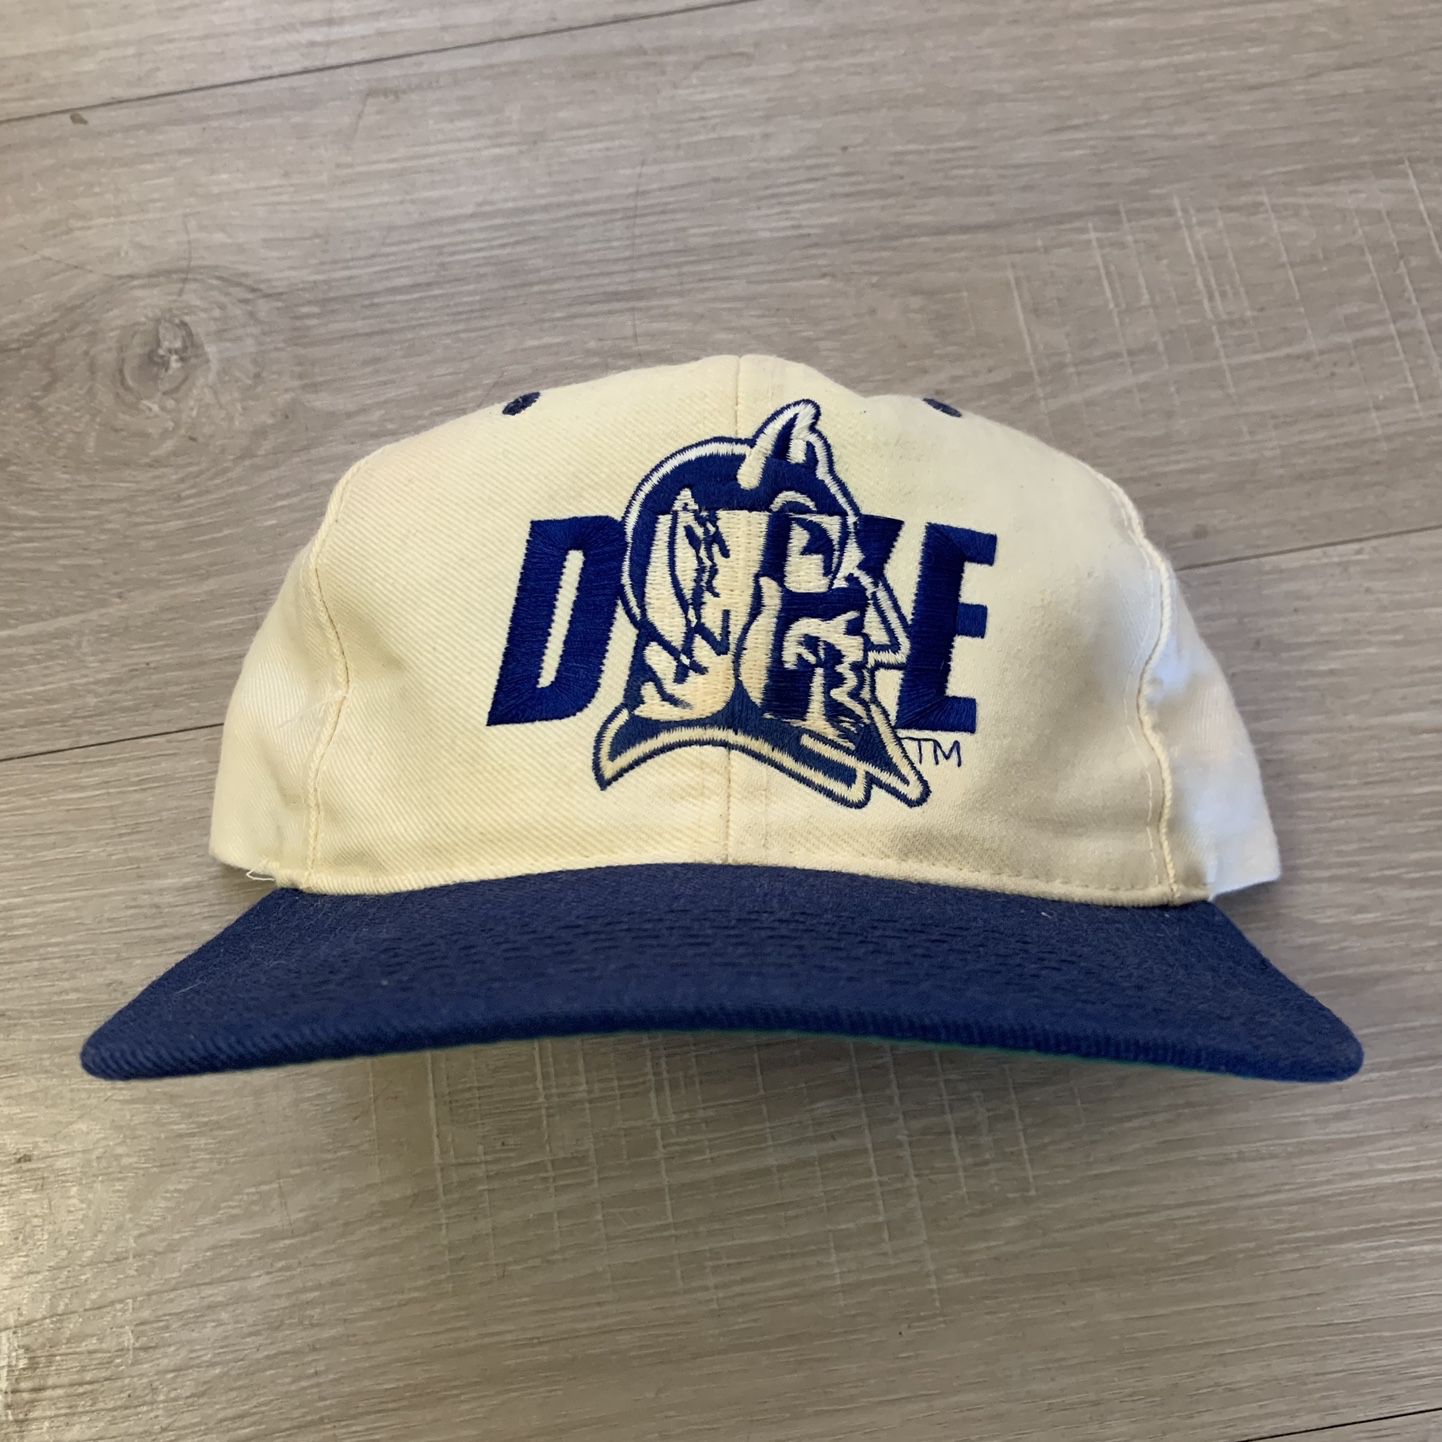 Vintage New Era Duke Blue Devils SnapBack NCAA for Sale in Tempe, AZ -  OfferUp